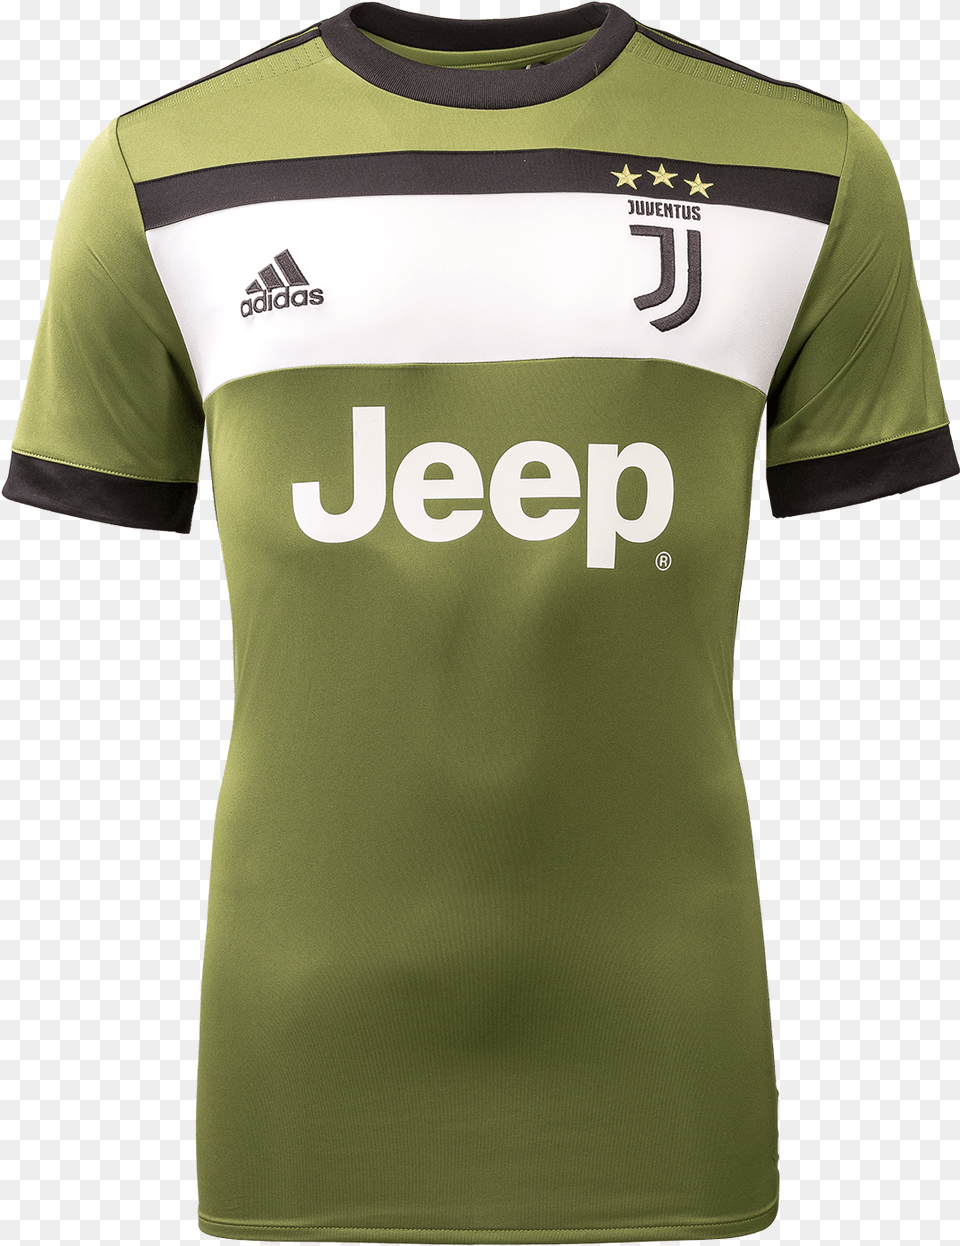 Juventus Third Jersey, Clothing, Shirt, T-shirt Png